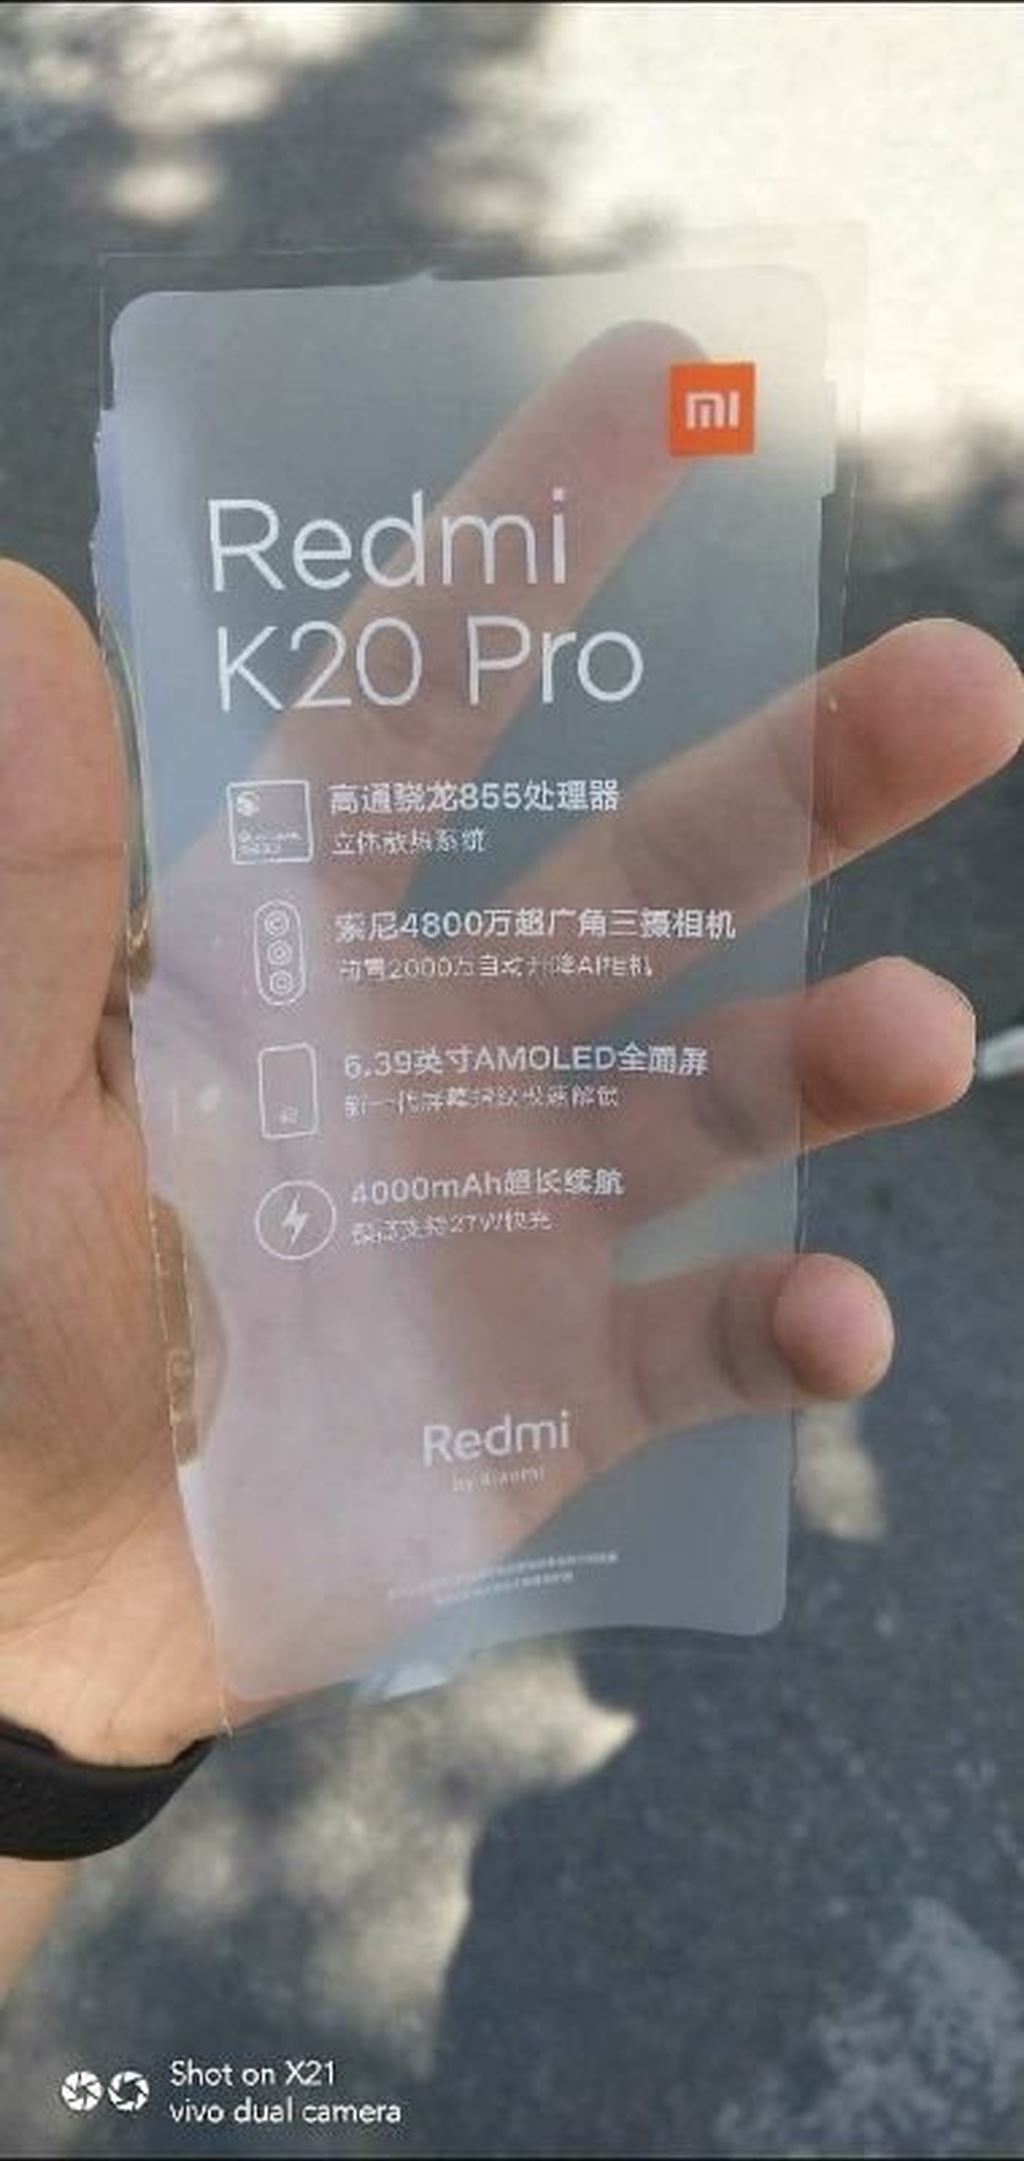 K20 Pro là flagship Redmi sắp ra mắt: Snapdragon 855, camera 48MP ảnh 2